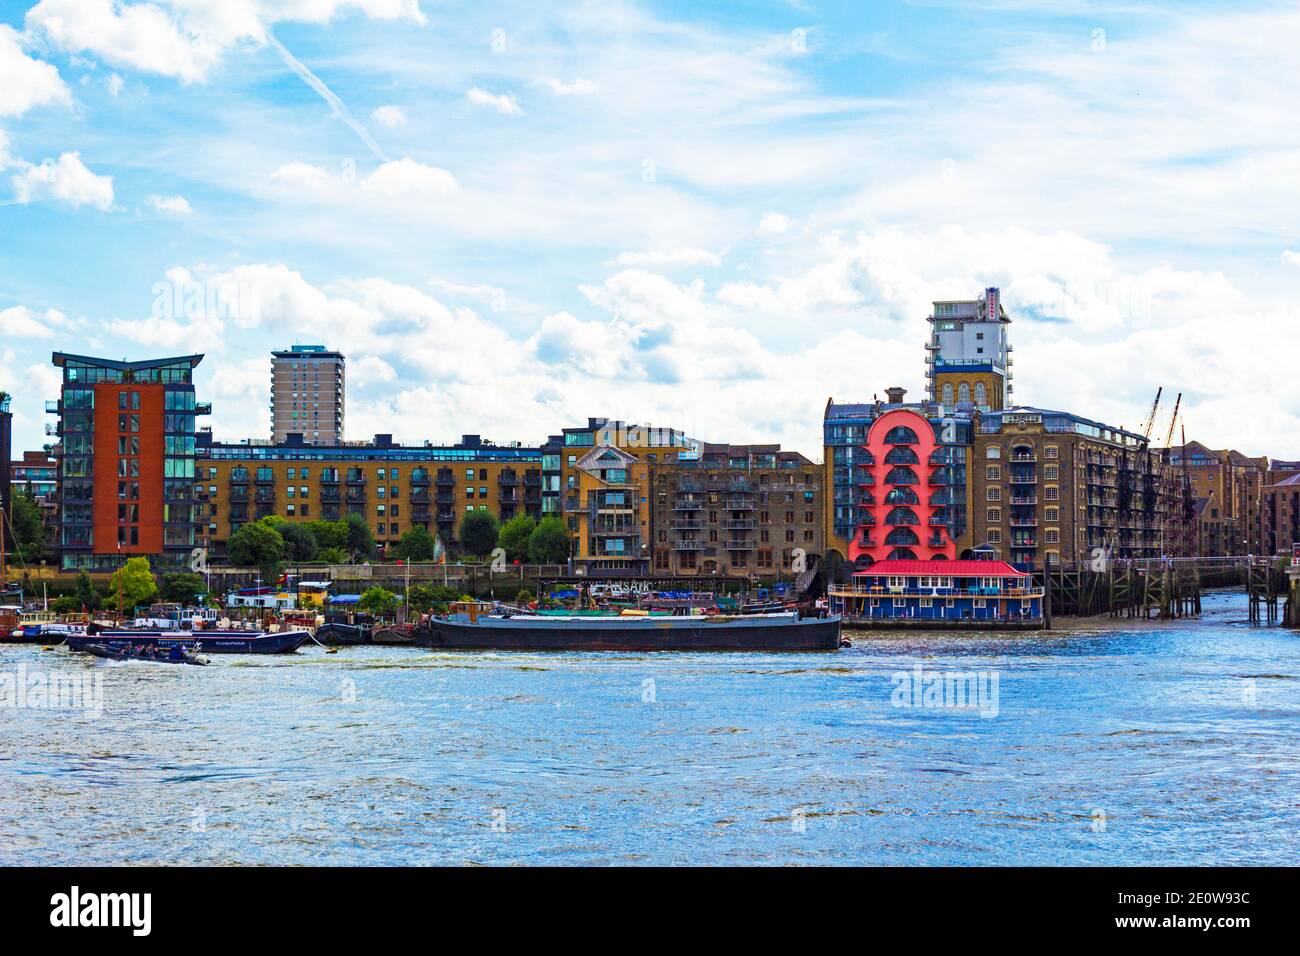 Rotherhithe Viertel am Südufer der Themse, ein sich entwickelndes Gebiet von ehemaligen Docks, umgebauten Lagerhäusern und Yachthäfen, London, Vereinigtes Königreich.2016 Stockfoto